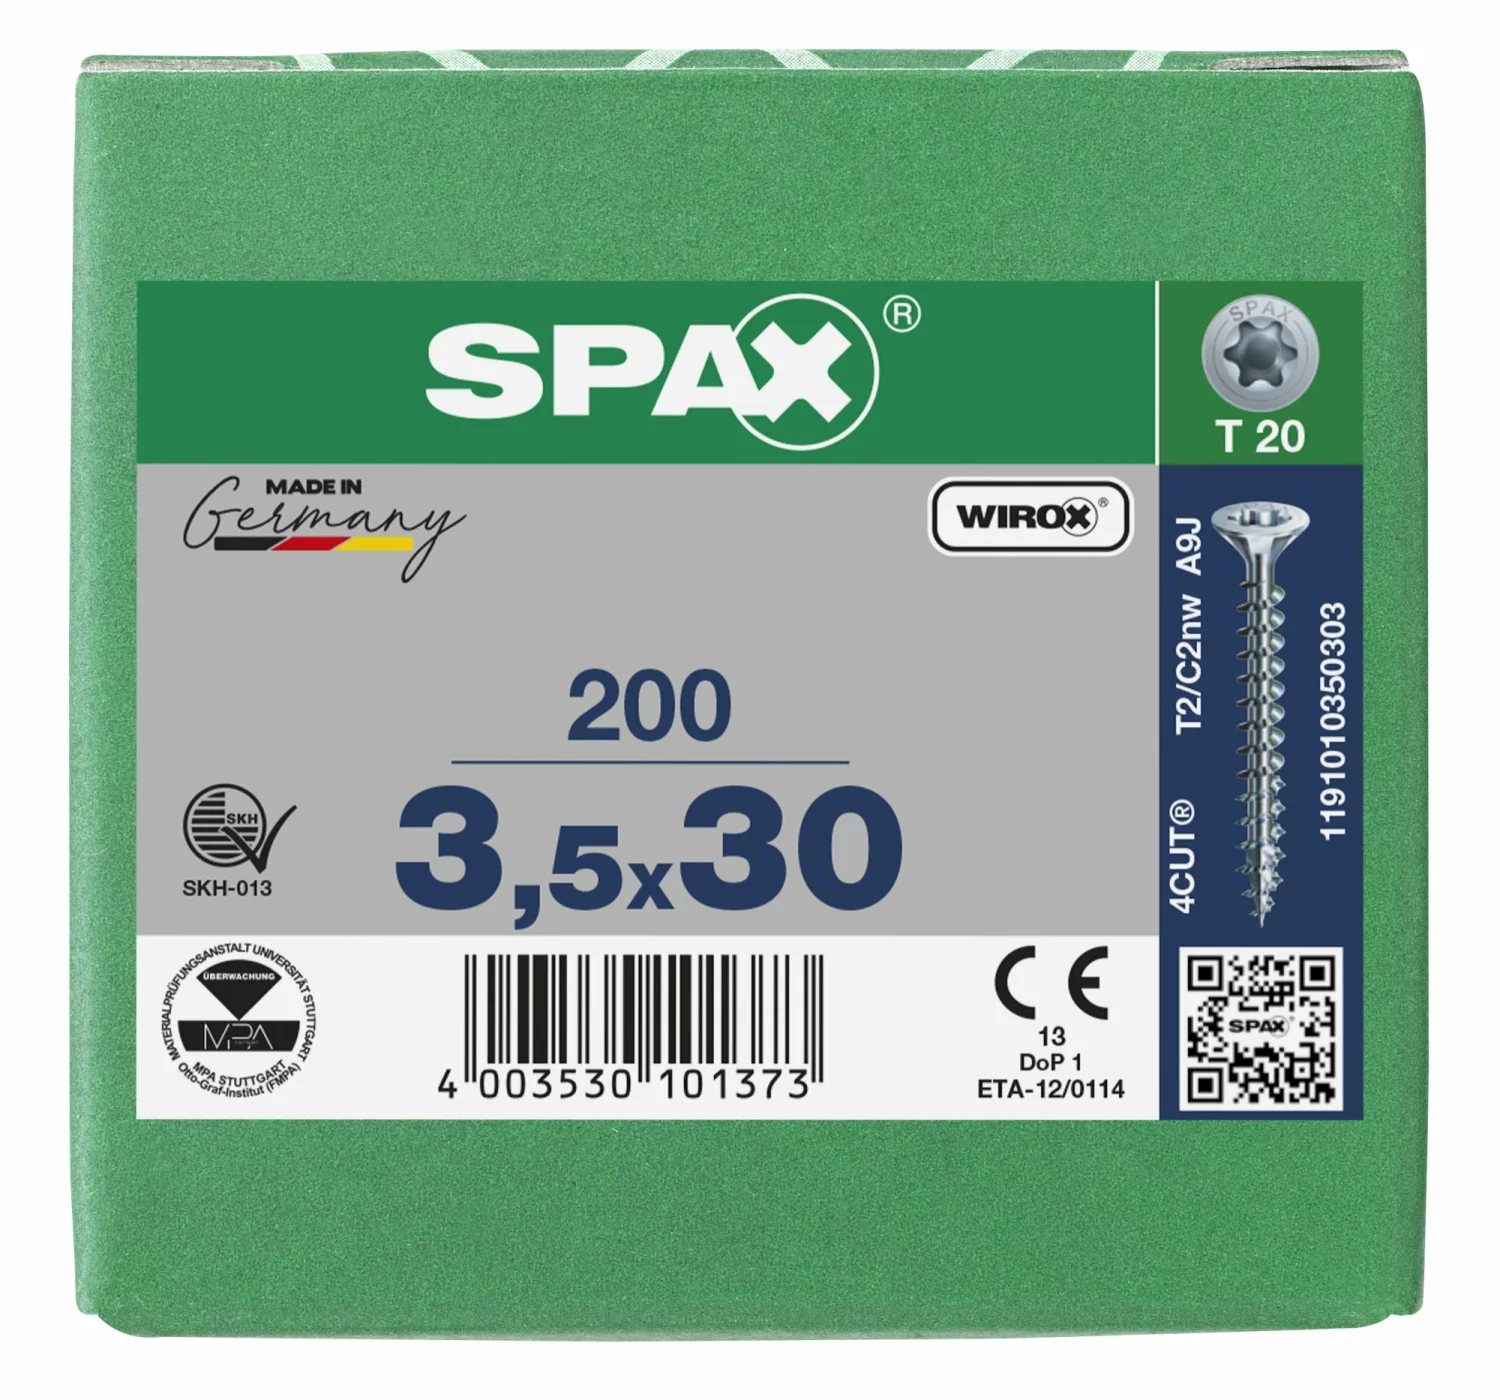 SPAX 1191010350303 Universele schroef, Verzonken kop, 3.5 x 30, Voldraad, T-STAR plus TX20 - WIROX - 200 stuks-image